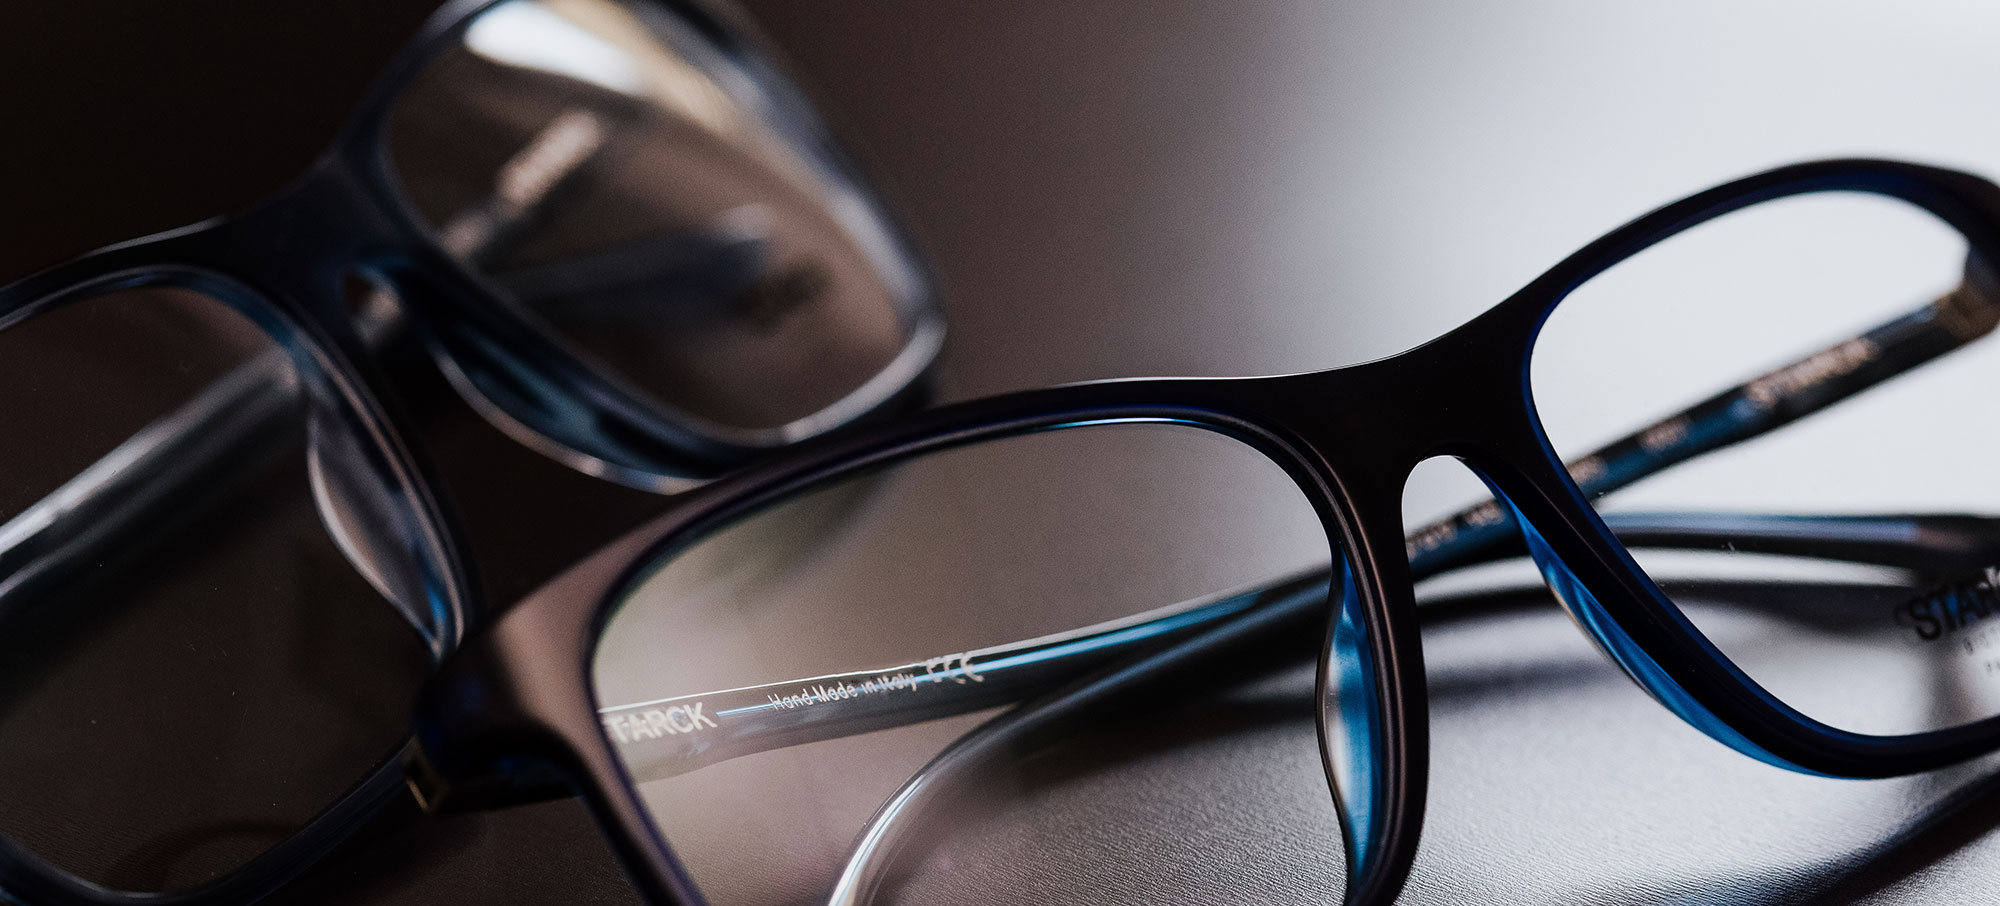 Starck eyes Brillen mit Biolink-Technologie – echt starke Brillen